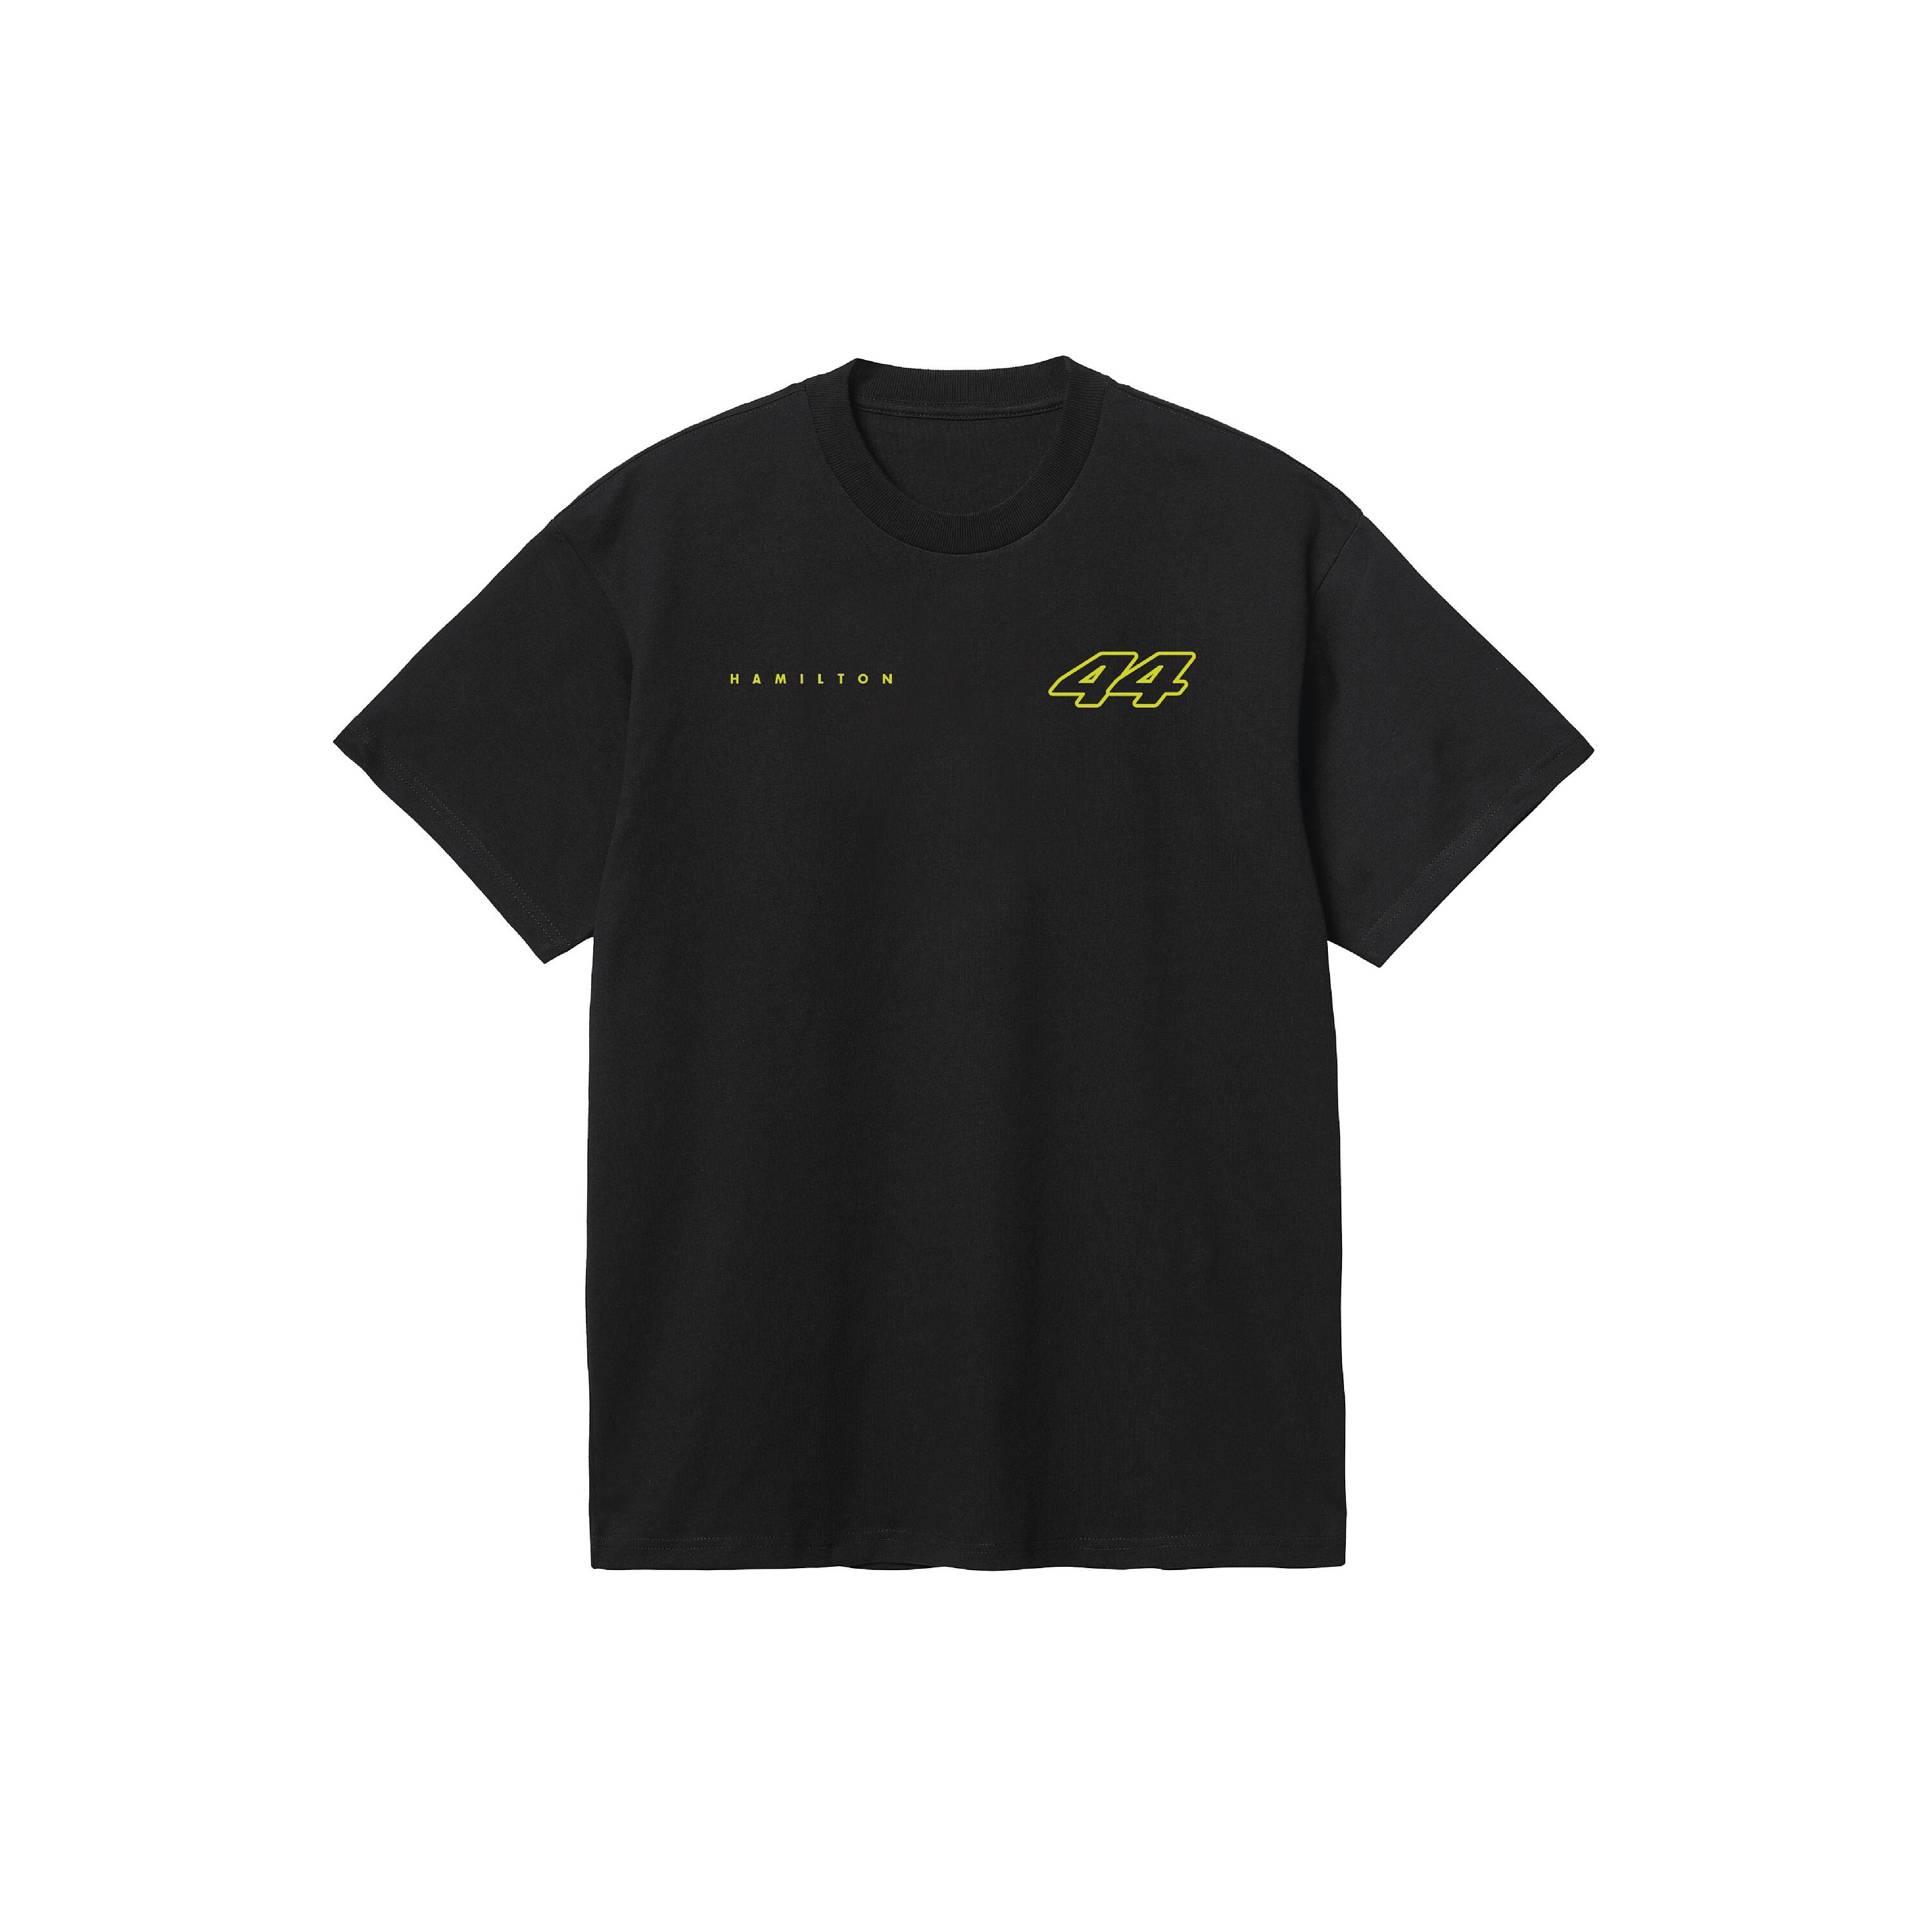 Hamilton 44 Formula One Racing T-shirt Motorsport Clothing - Etsy UK